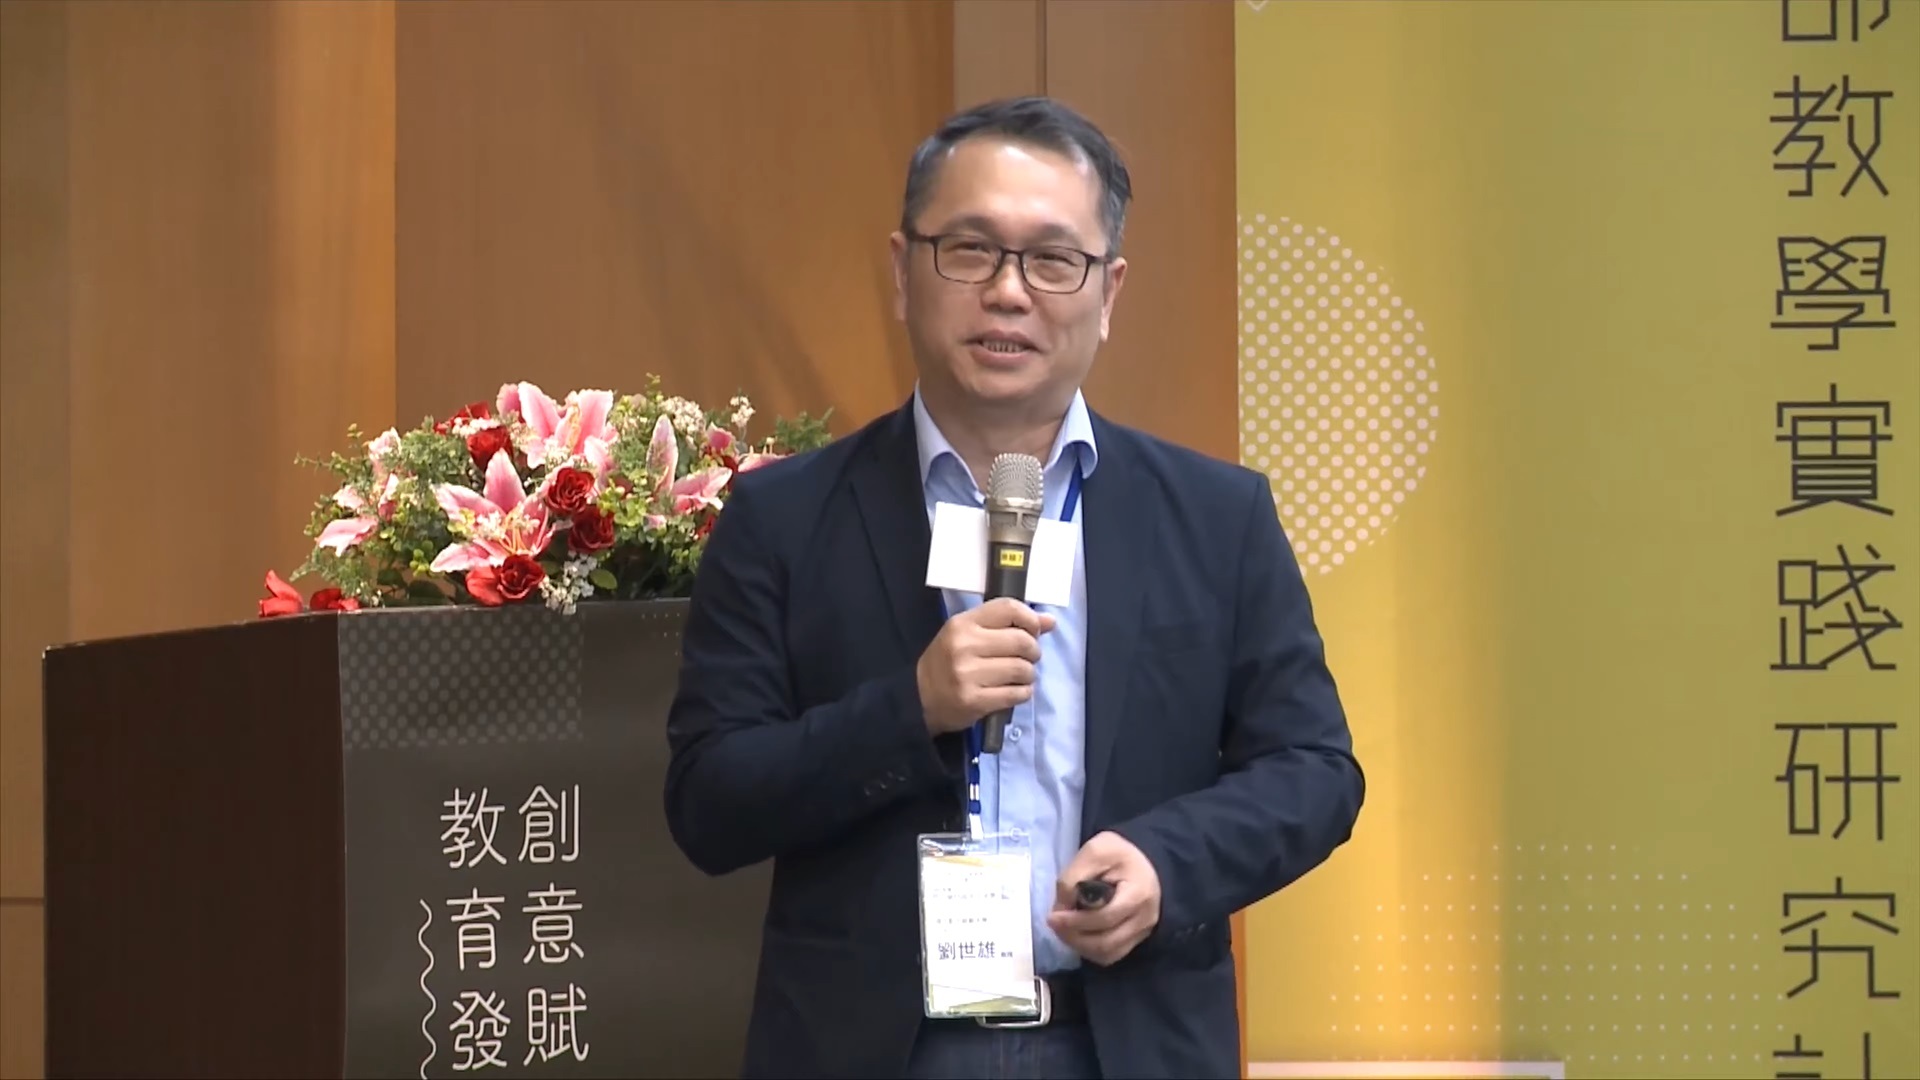 劉世雄教授專長領域為「數位科技在課程與教學的應用」和「師資培育與教師專業成長」。